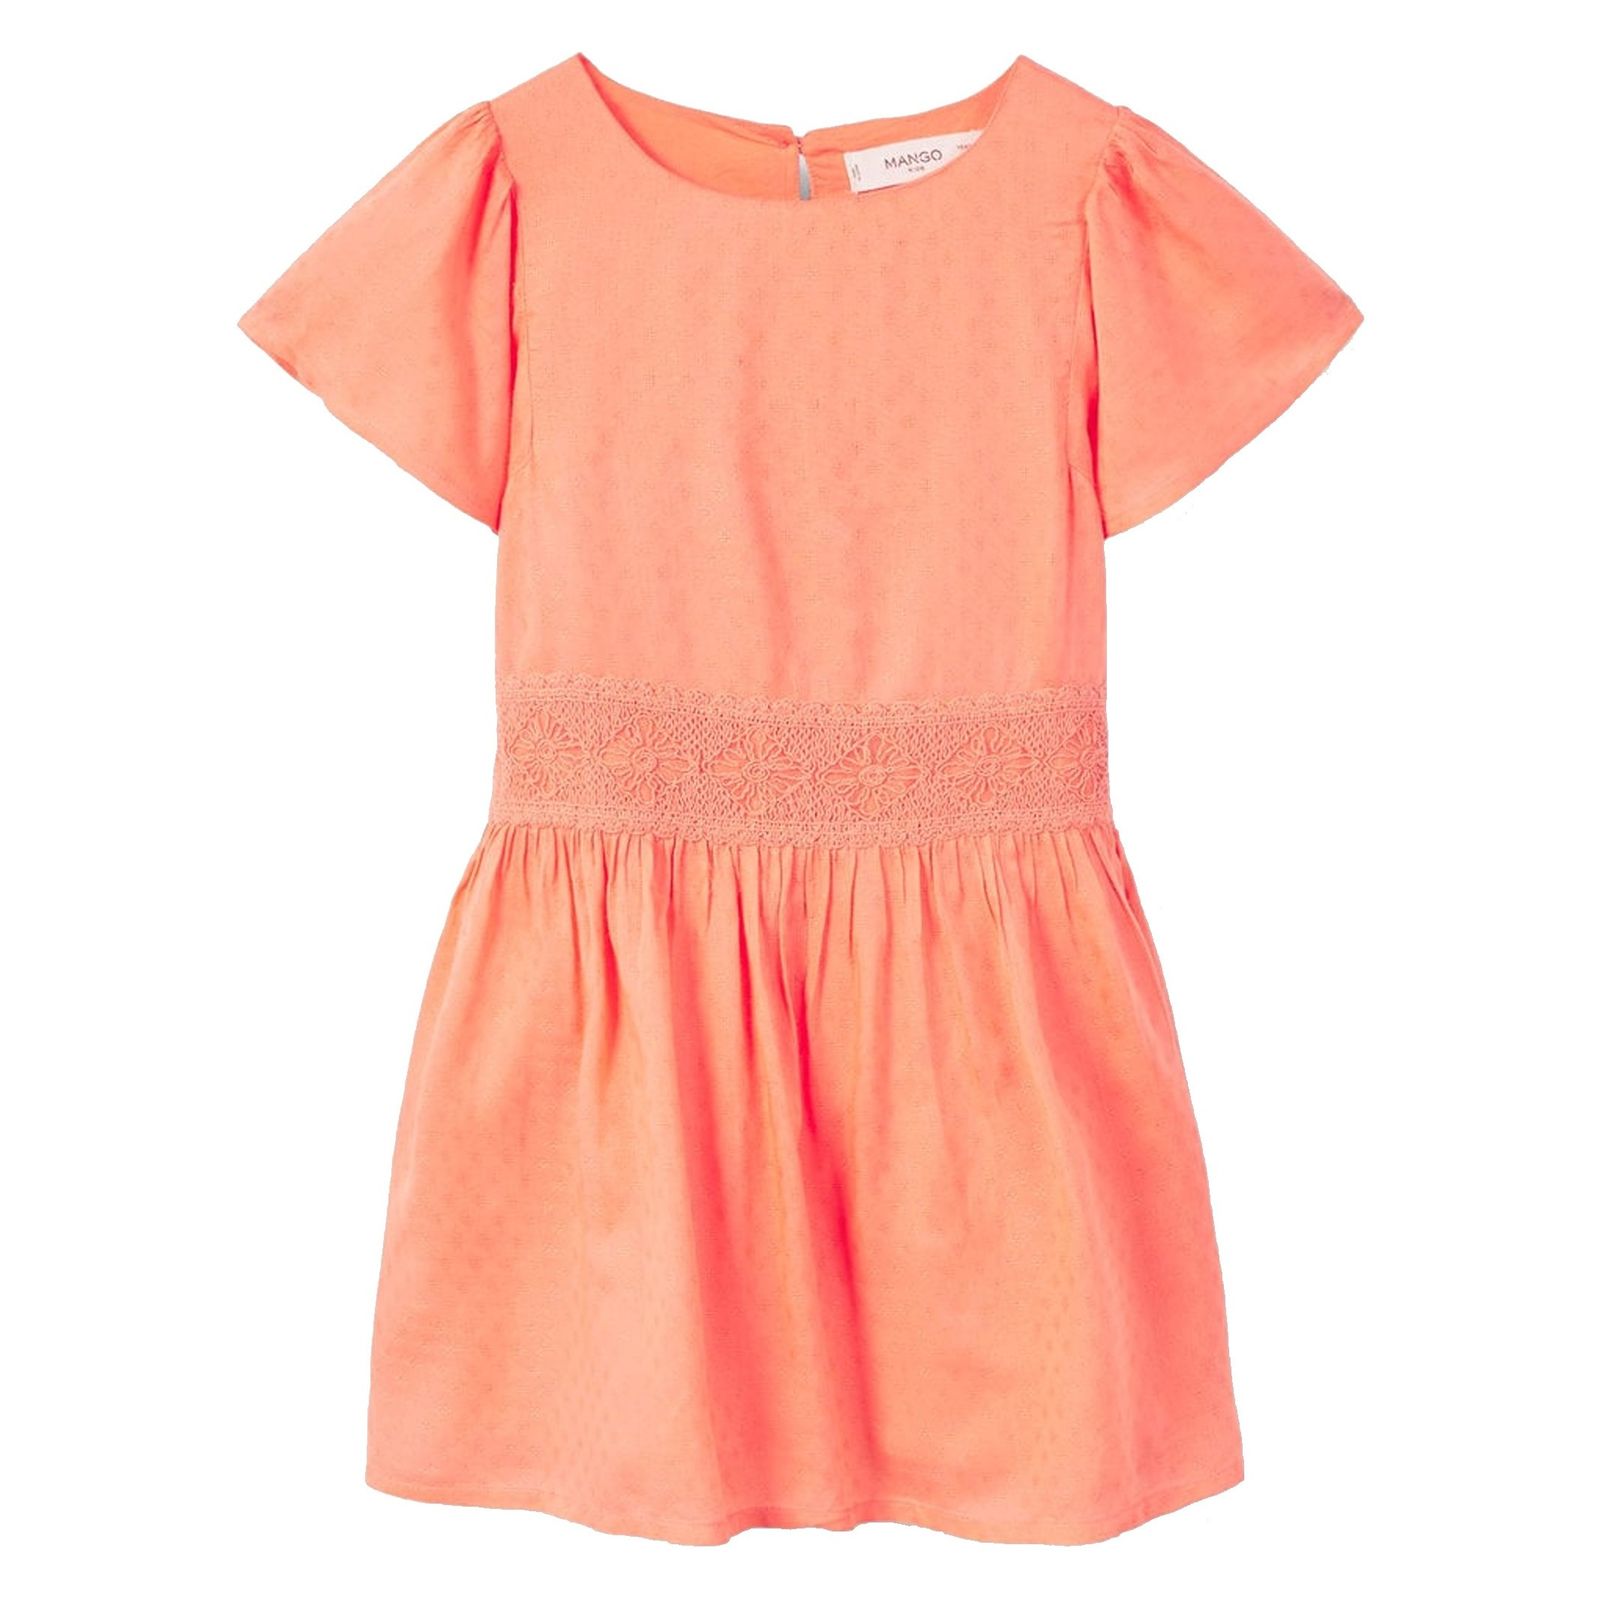 پیراهن ویسکوز روزمره دخترانه - مانگو - نارنجي - 2